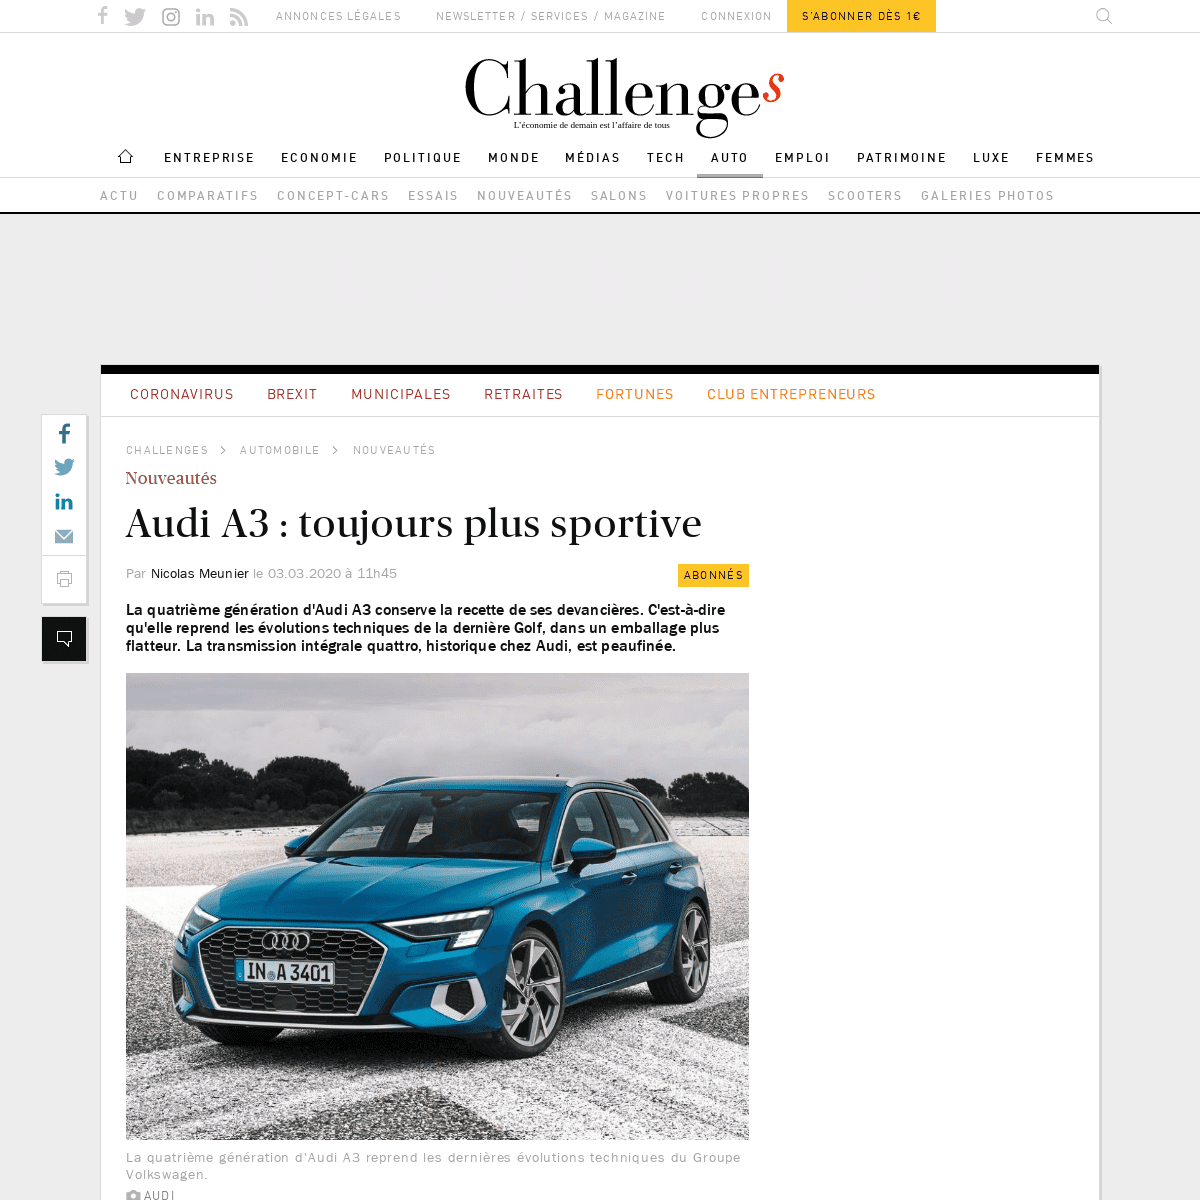 A complete backup of www.challenges.fr/automobile/nouveautes/audi-a3-toujours-plus-sportive_701266